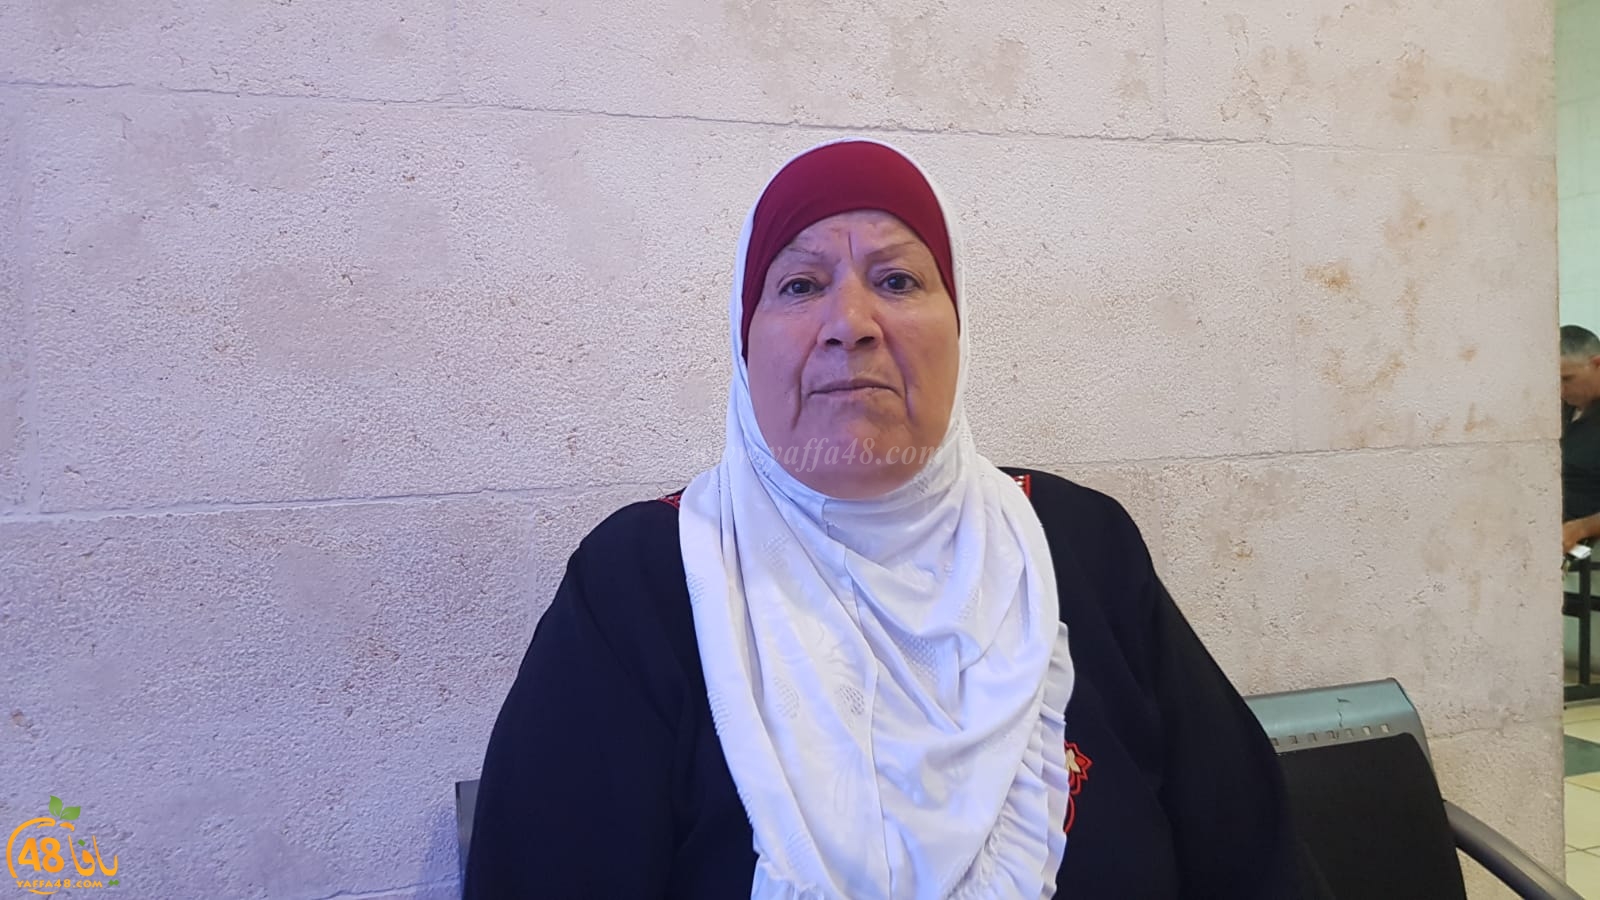 فيديو: والدة احمد النقيب الحاجة نحن لا نخطف اولاد الناس وابني بريء ومظلوم